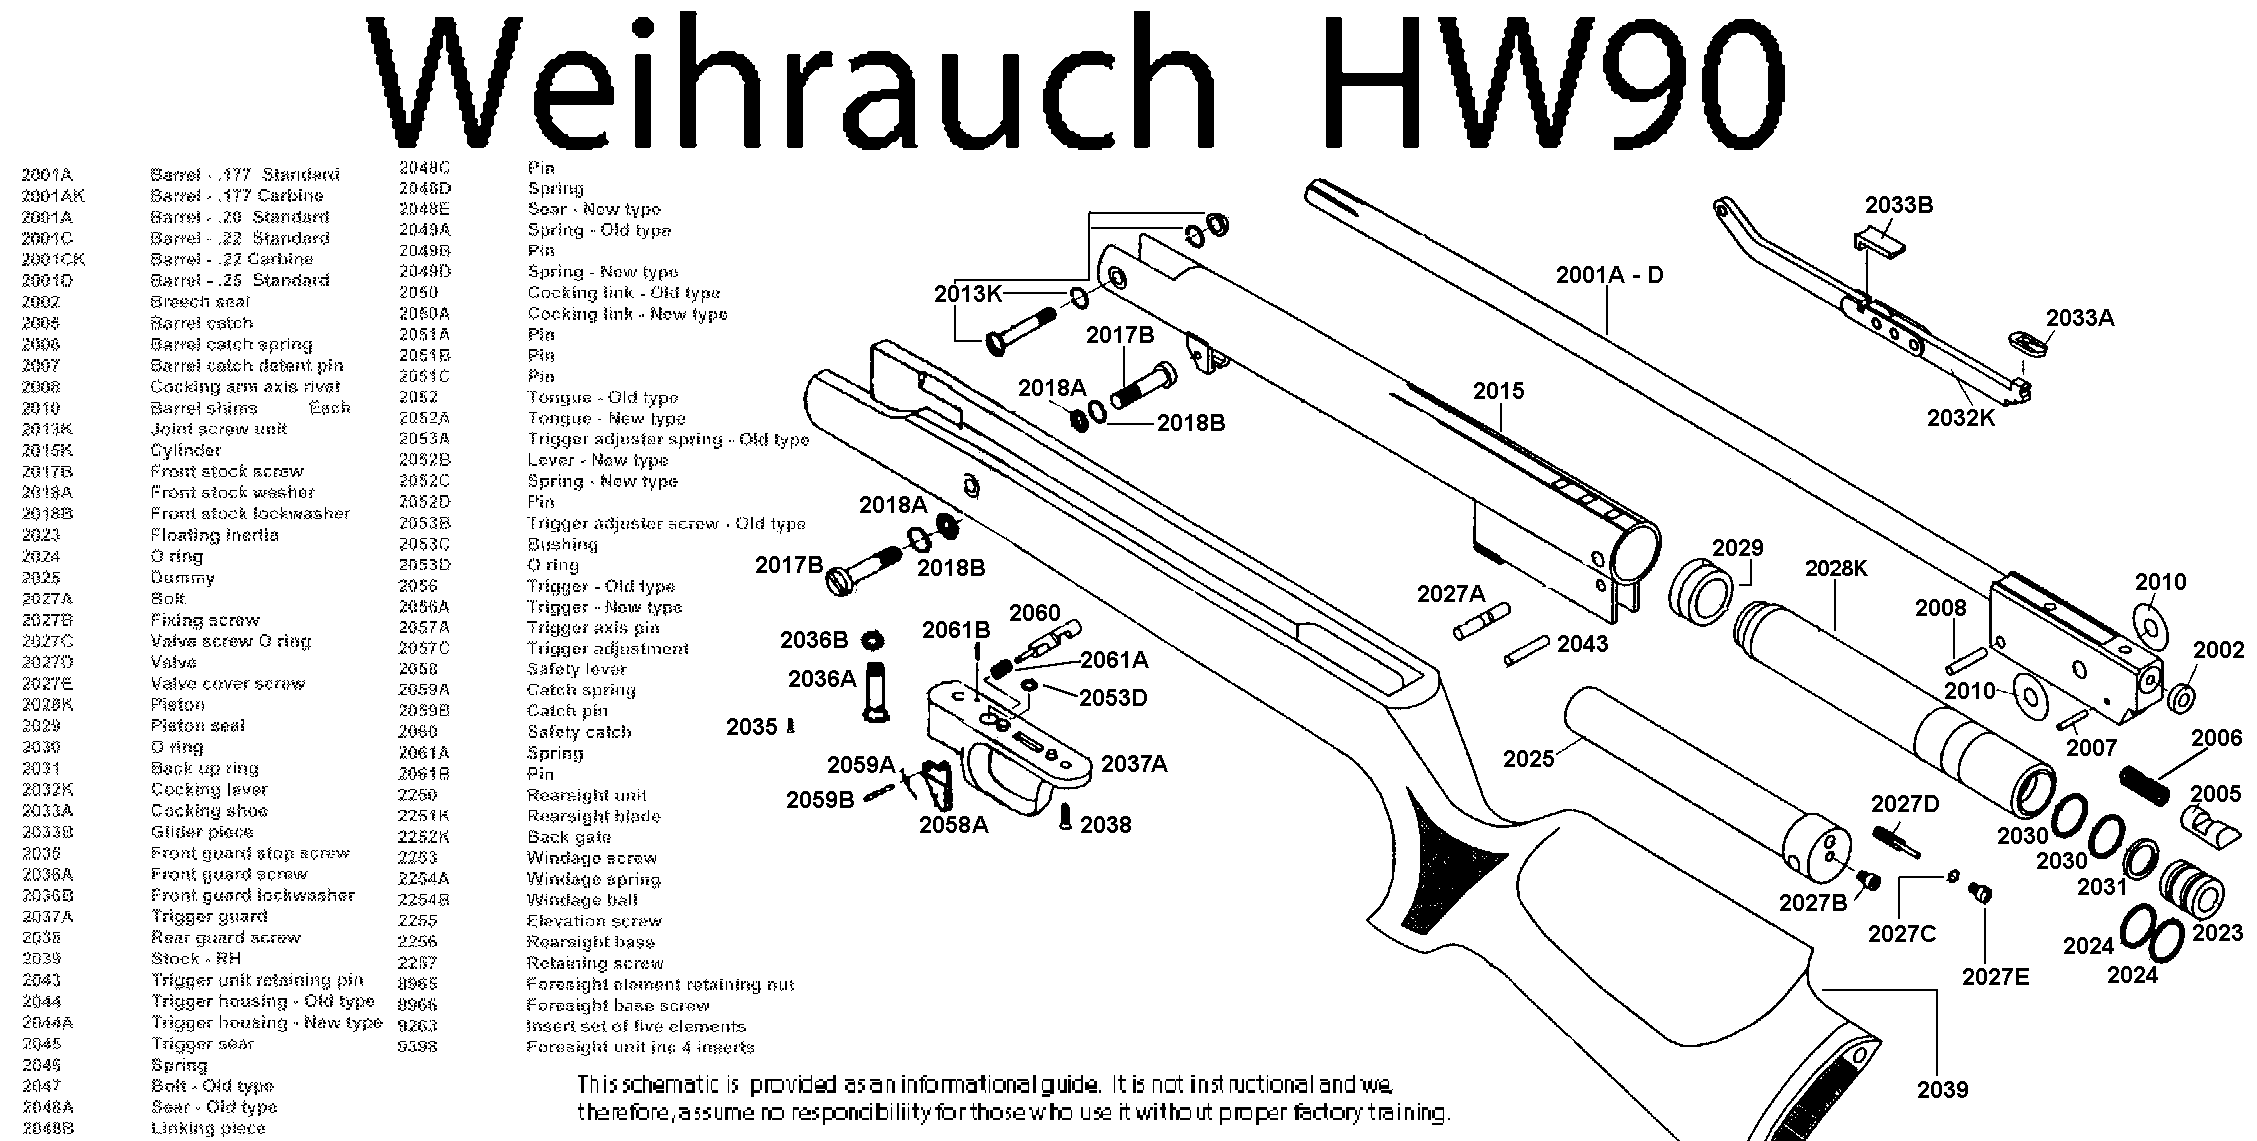 HW90 Schematic